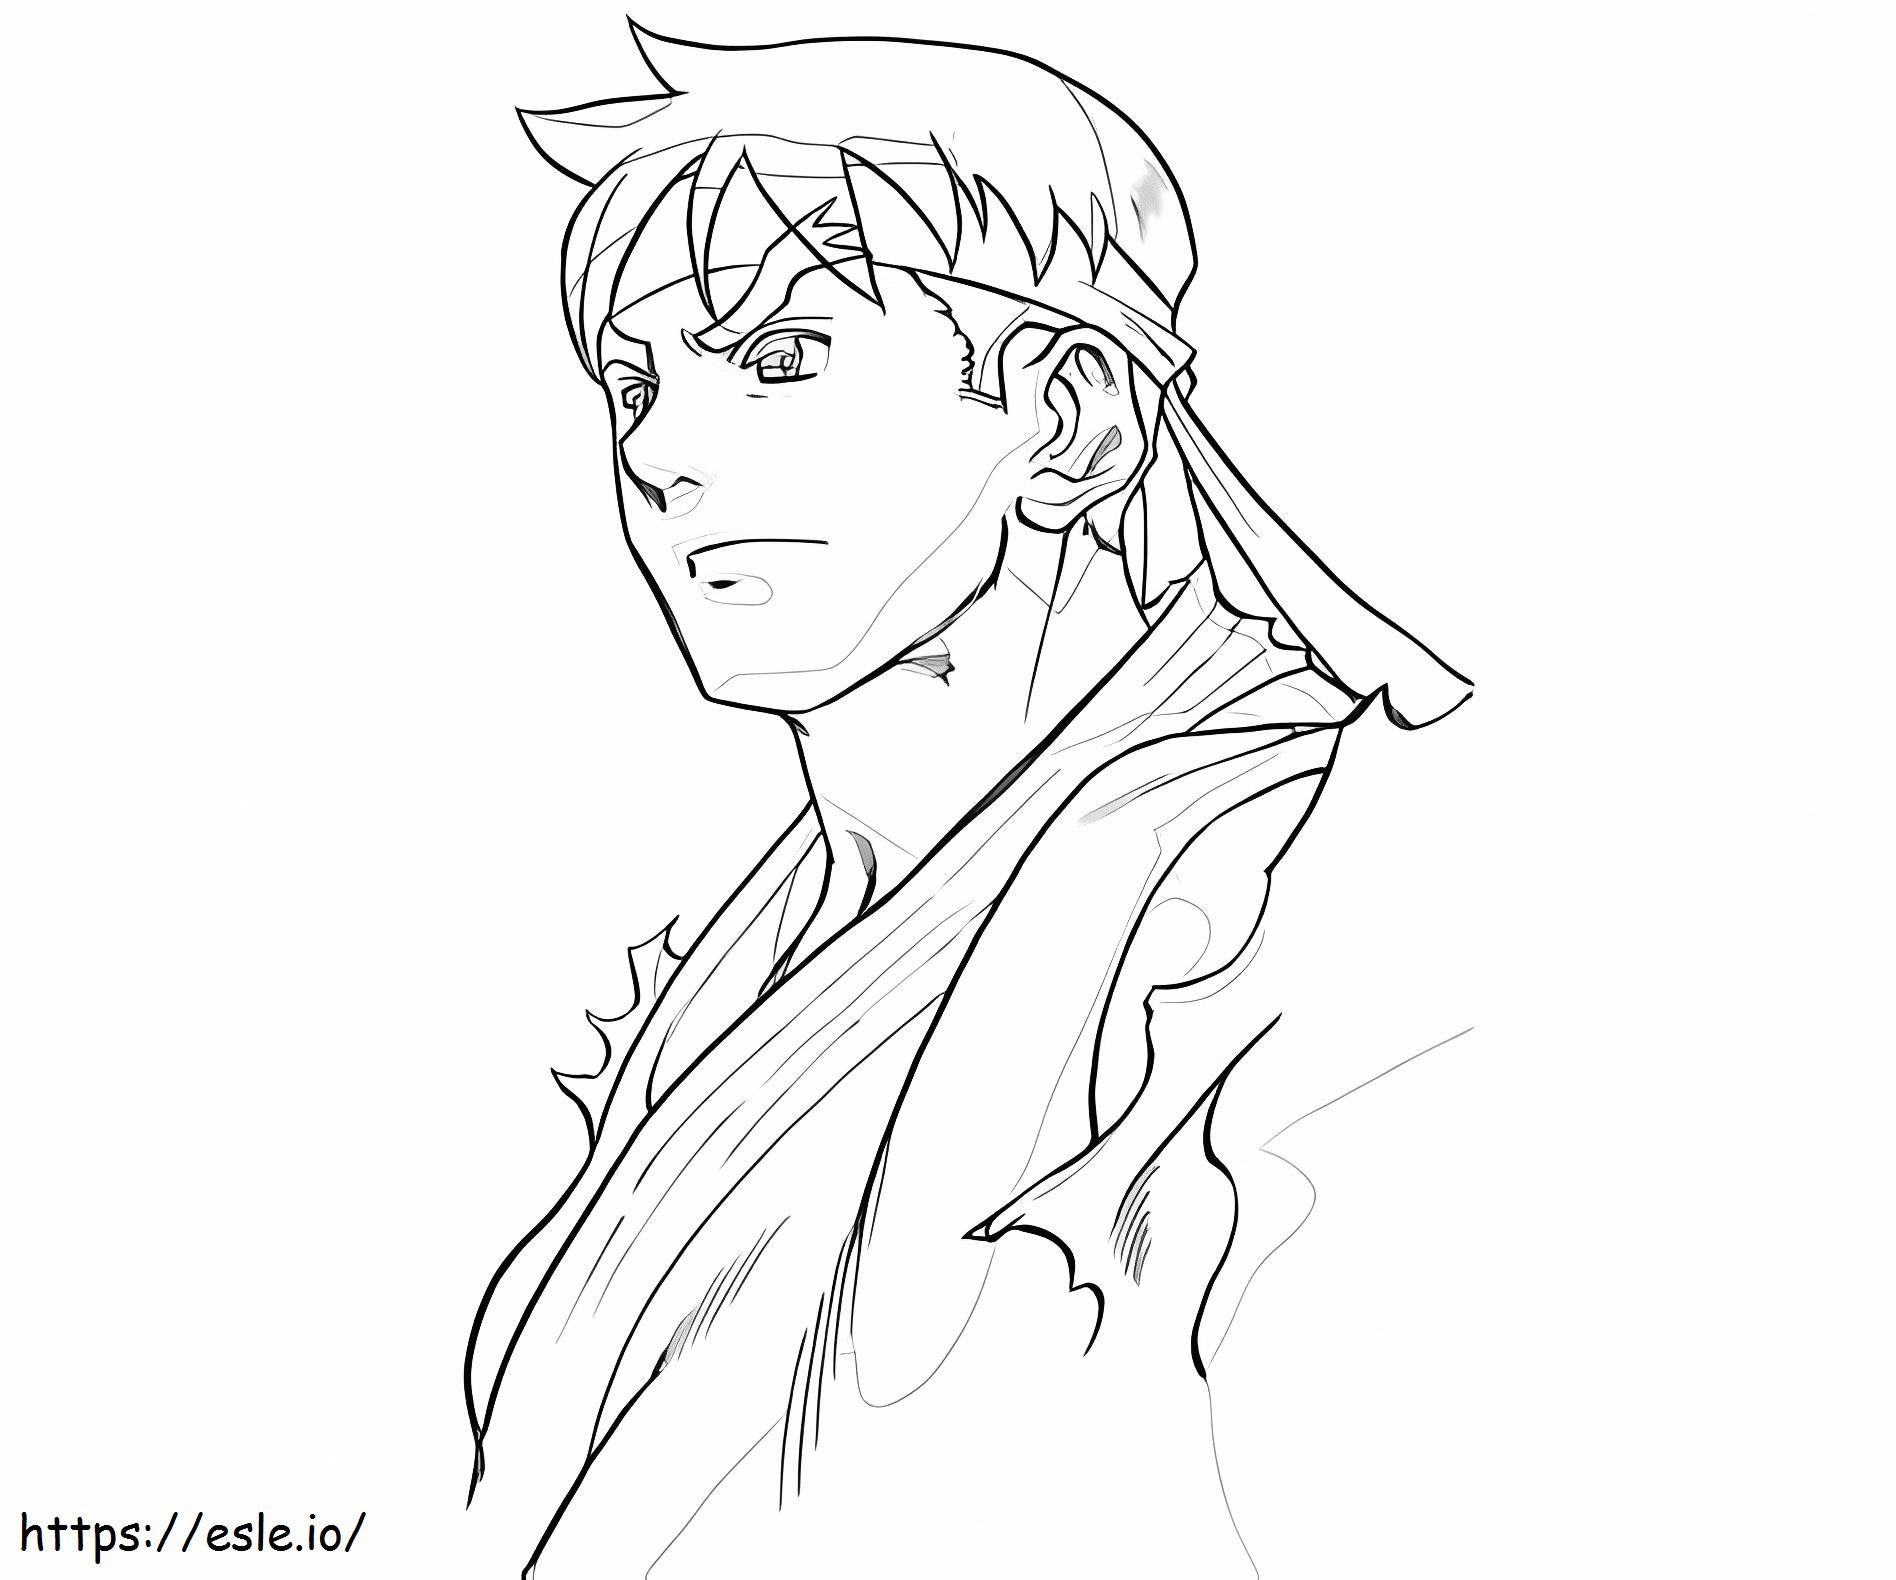 Disegno a mano Ryu da colorare